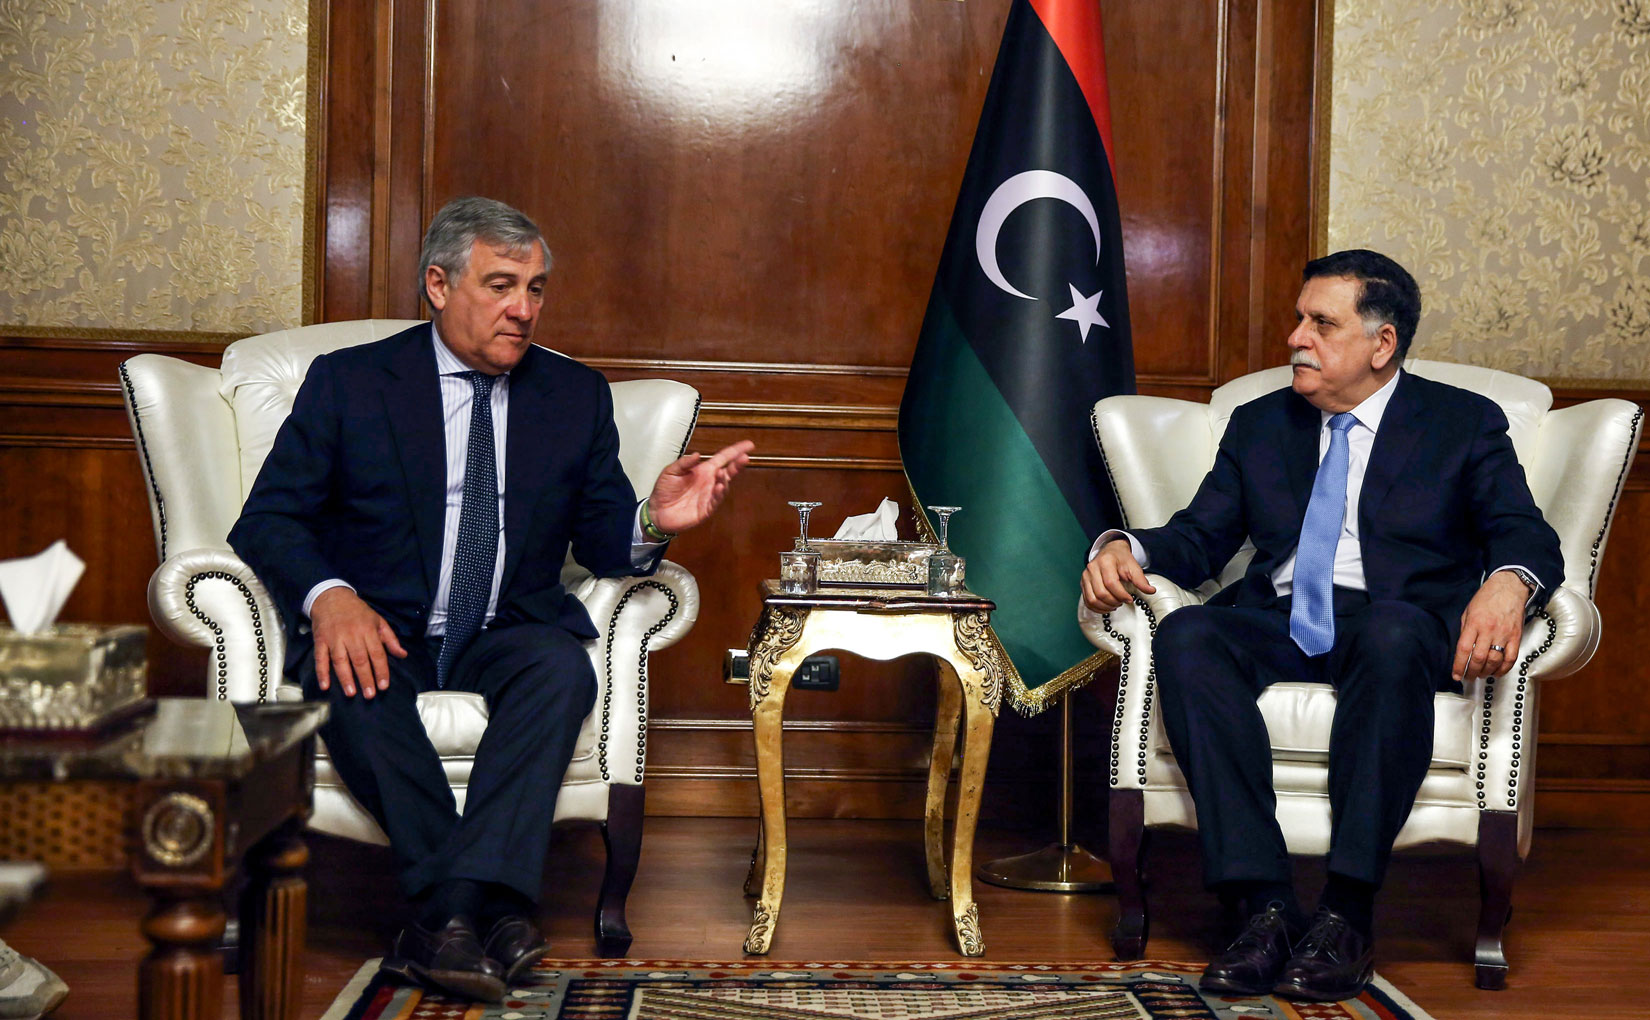 انتونيو تاجاني رئيس البرلمان الأوروبي التقى رئيس حكومة الوفاق الليبية في طرابلس